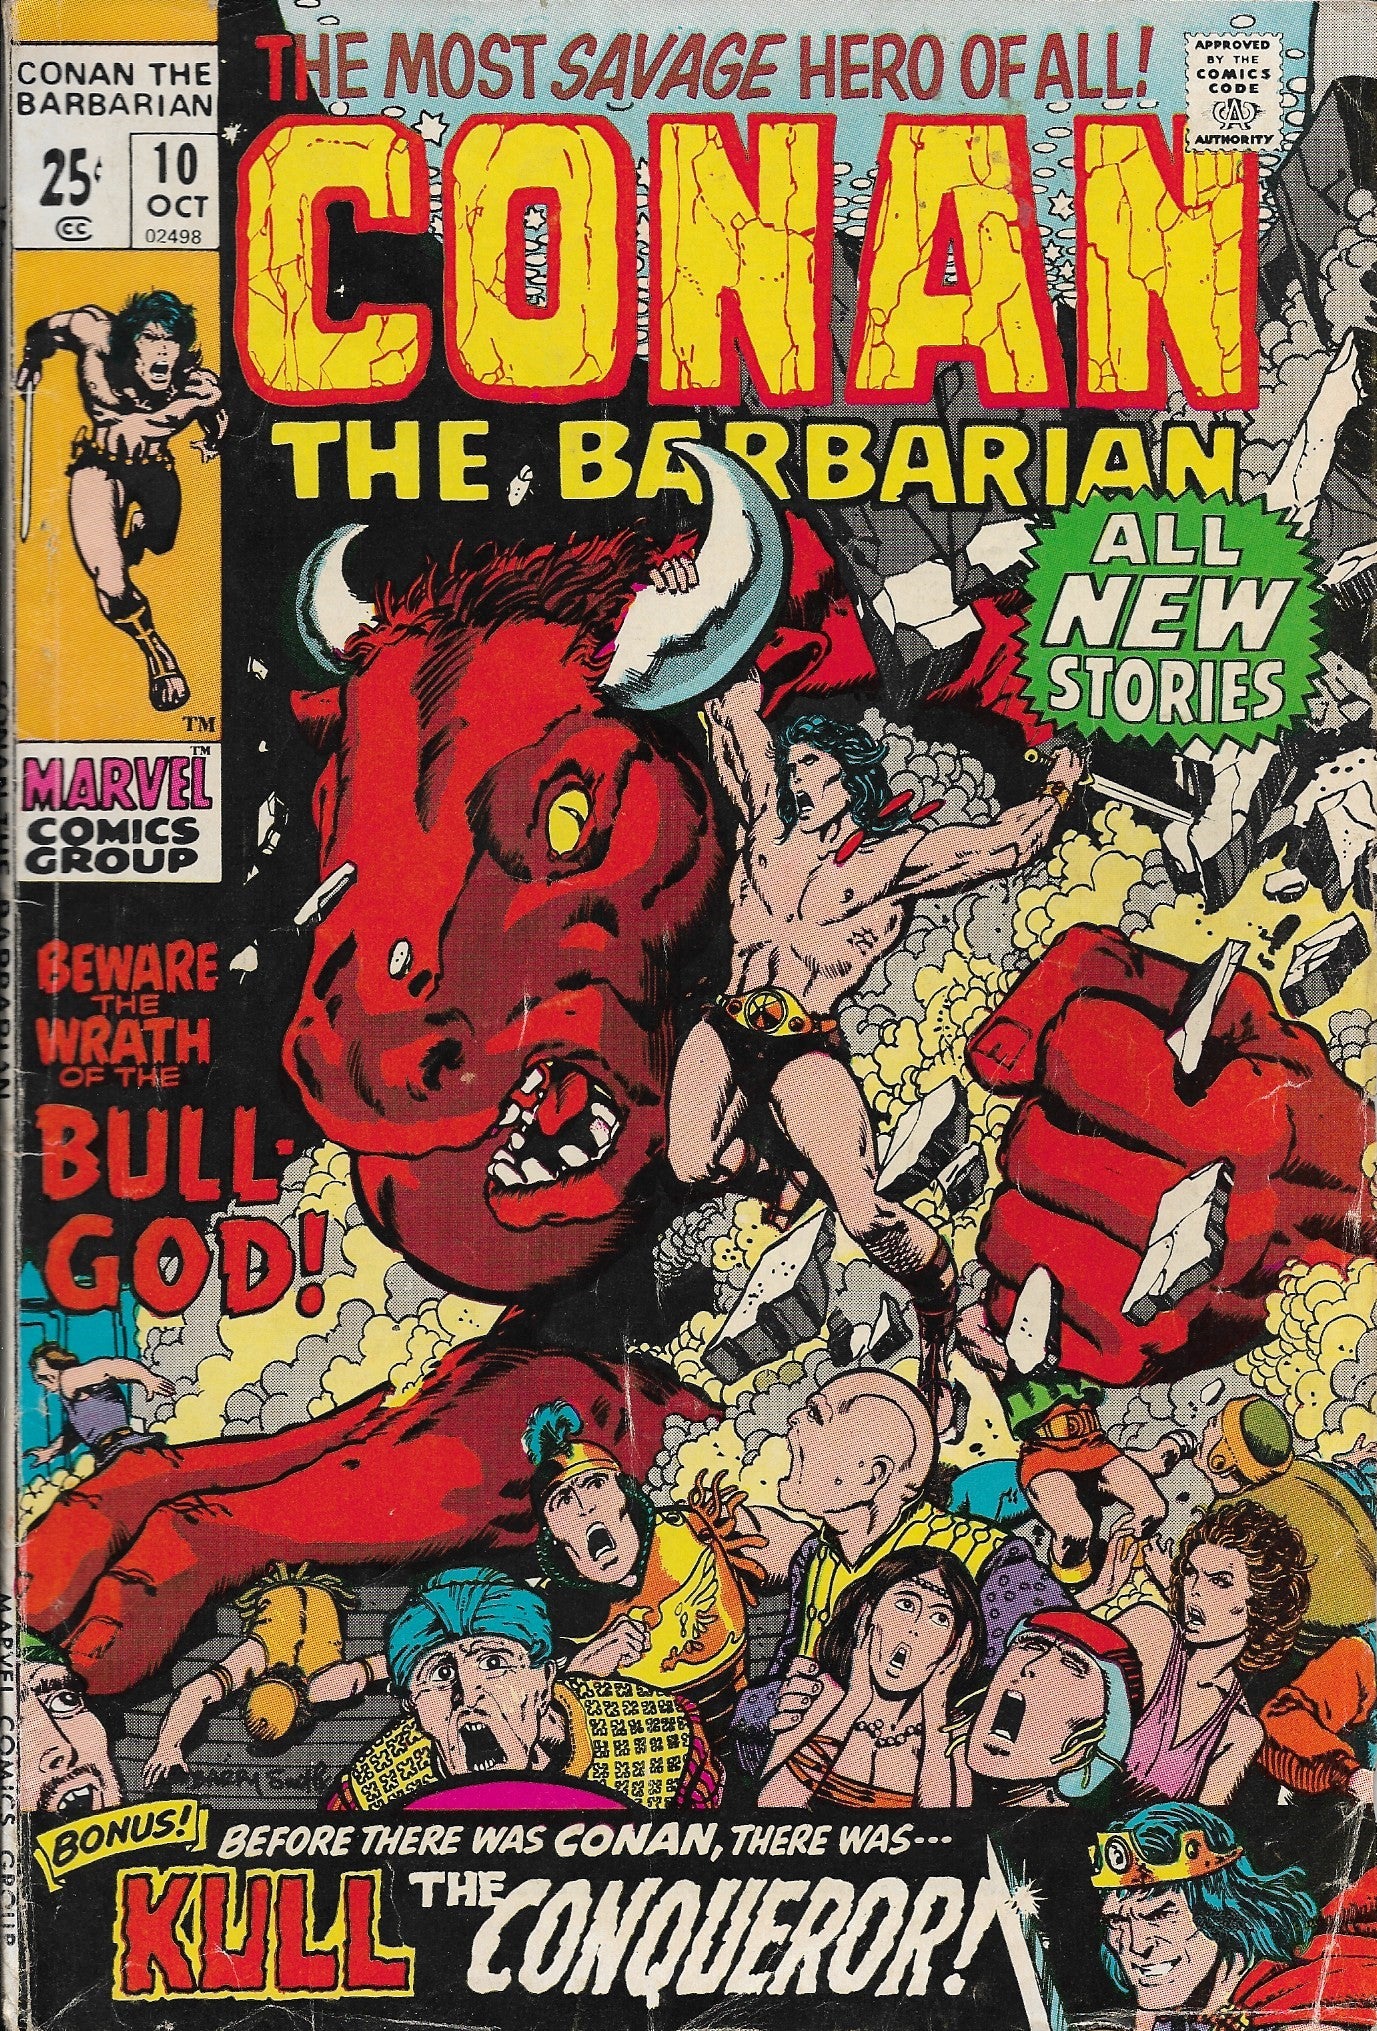 Conan the Barbarian No. 10, Marvel Comics, October 1971